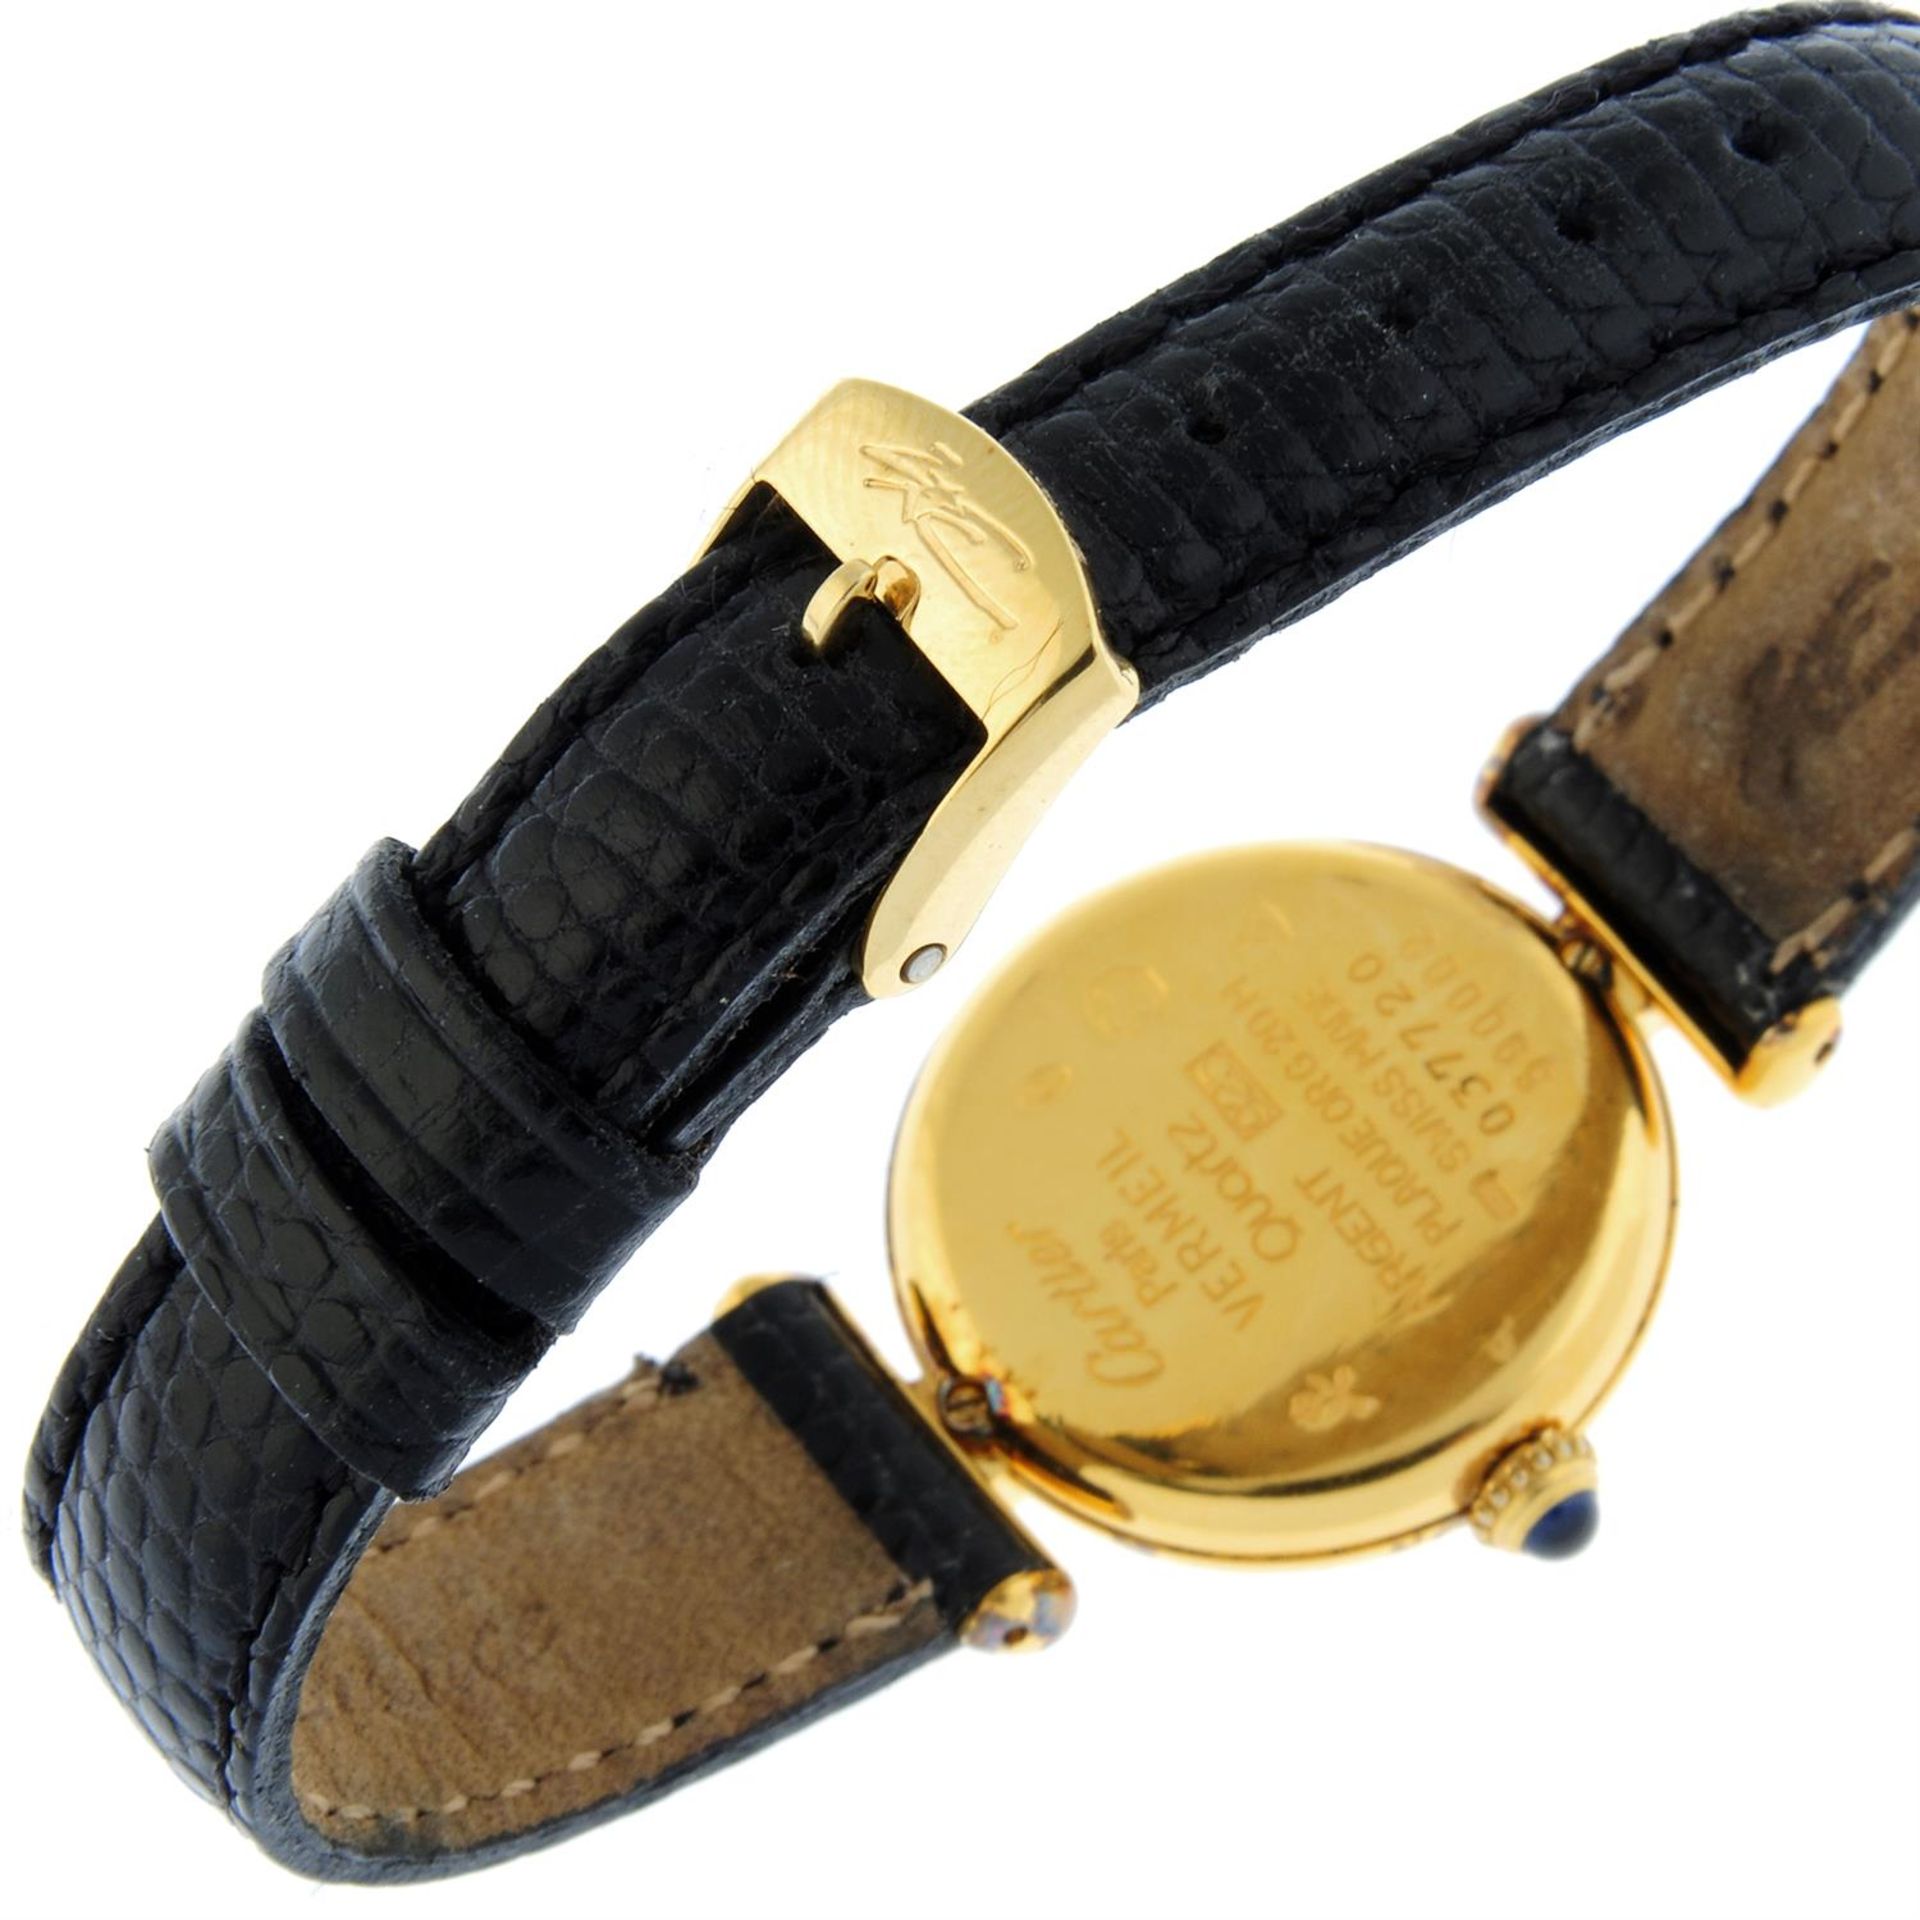 Cartier - a Colisée Vermeil watch, 24mm. - Image 2 of 6